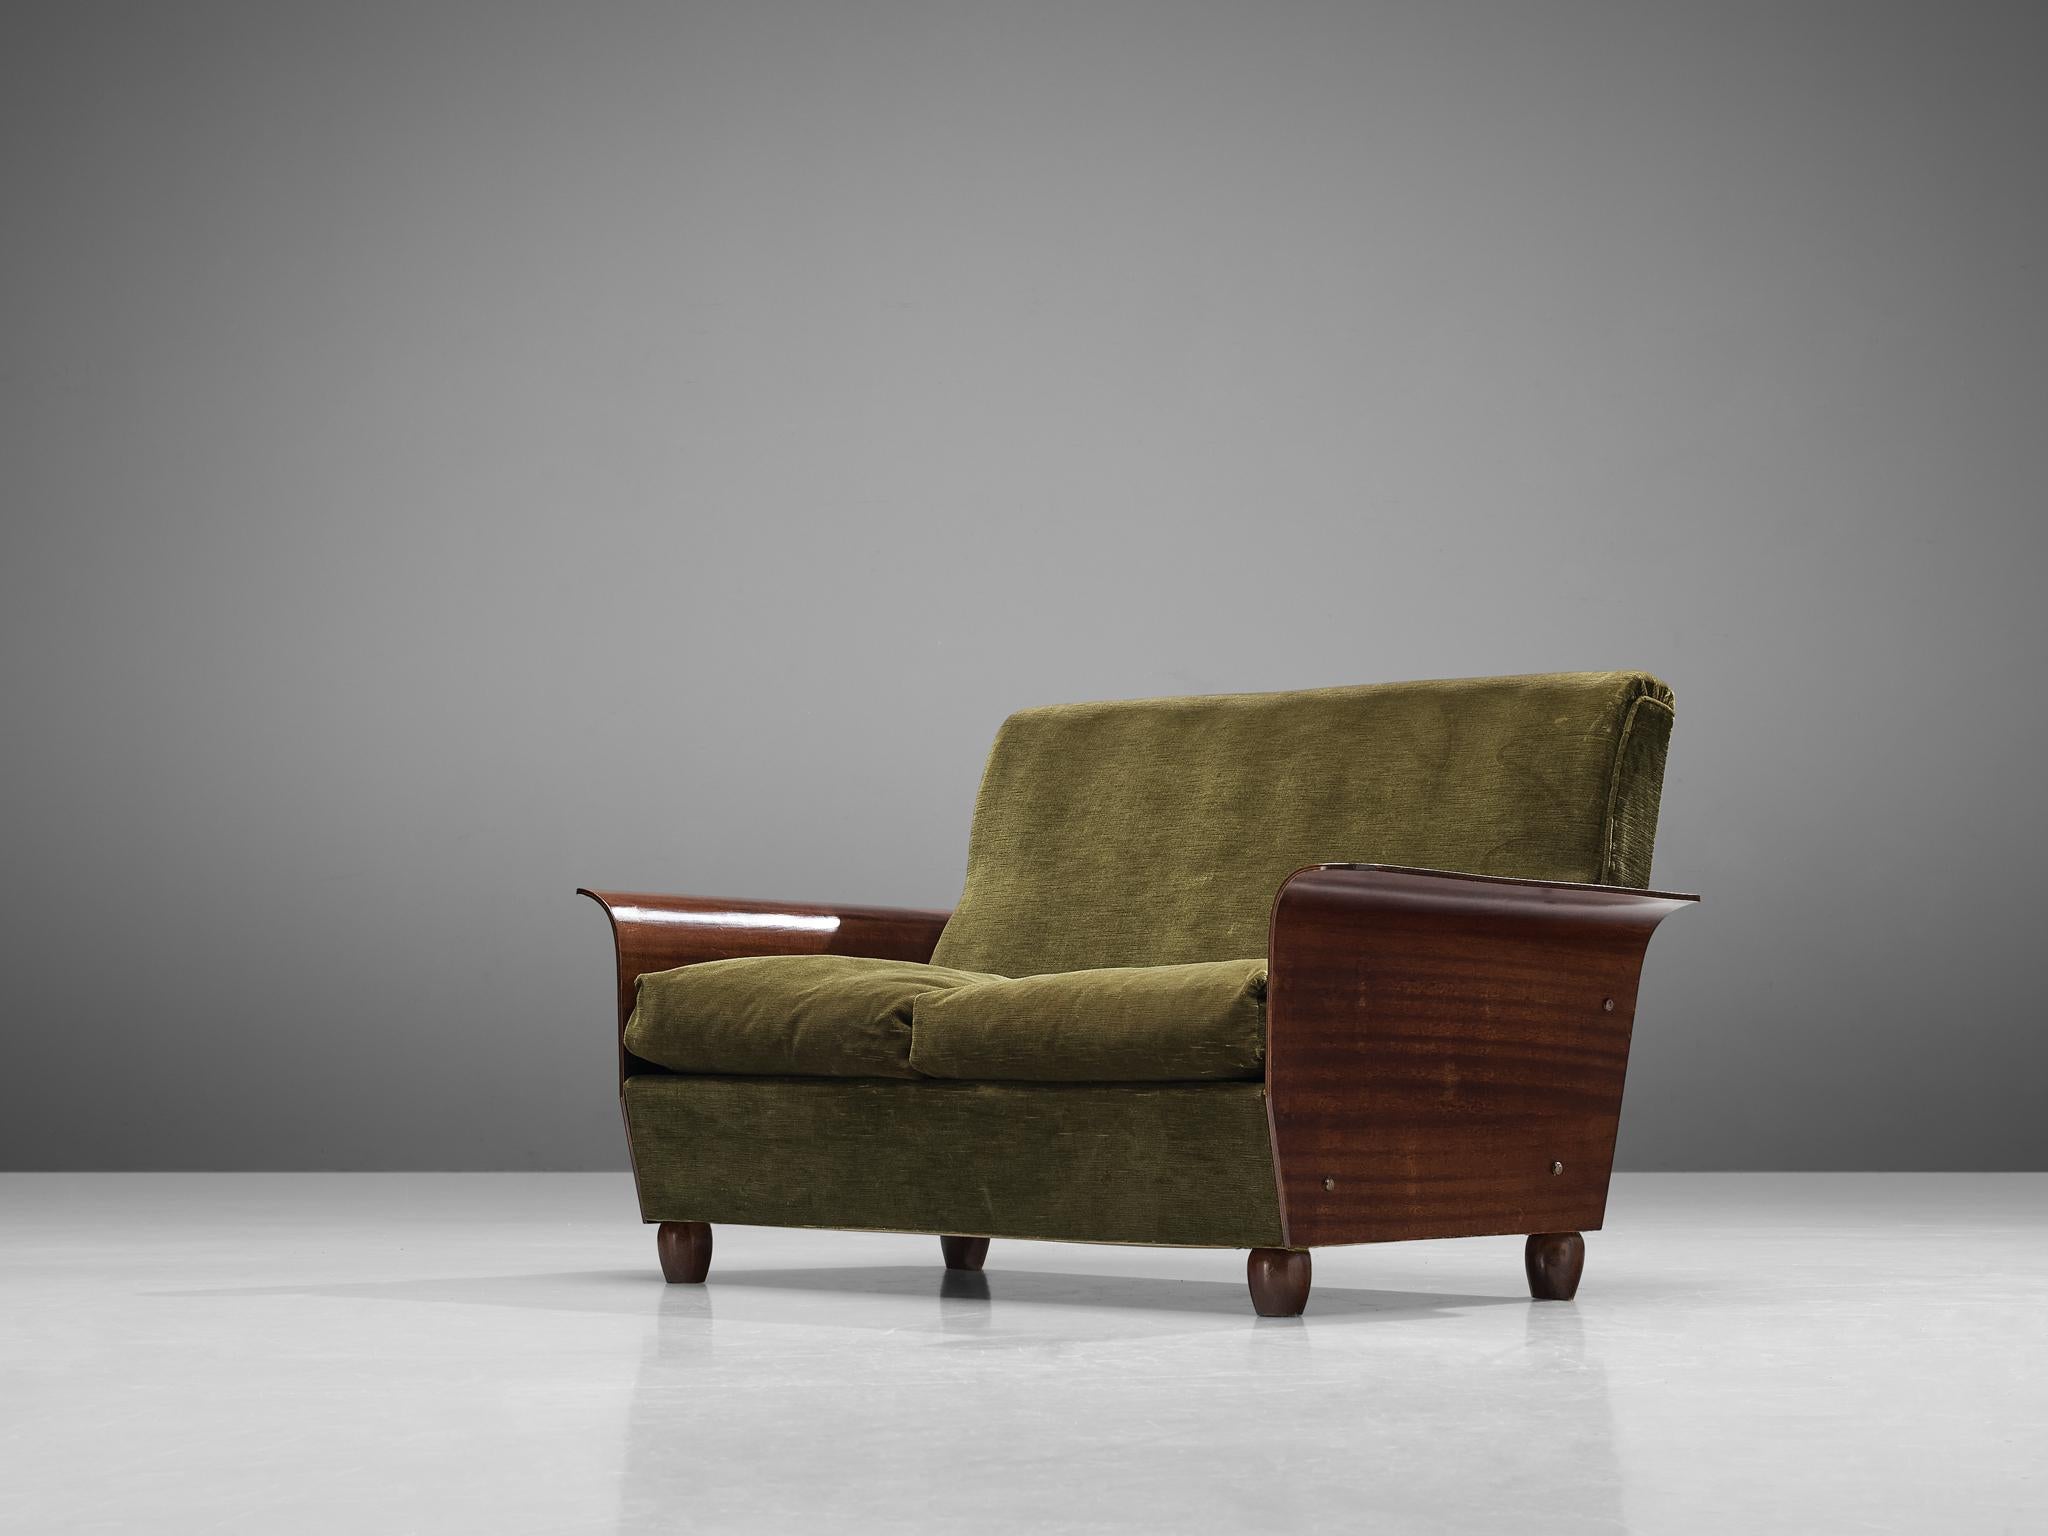 Zweisitziges Sofa, Samtstoff, Mahagoni, Italien, 1950er Jahre

Dieses formschöne Sofa italienischer Herkunft ist mit einem ausdrucksstarken, waldgrünen Bezug versehen, der das Auge erfreut. Dieses besondere Möbelstück ist so konzipiert, dass es dank